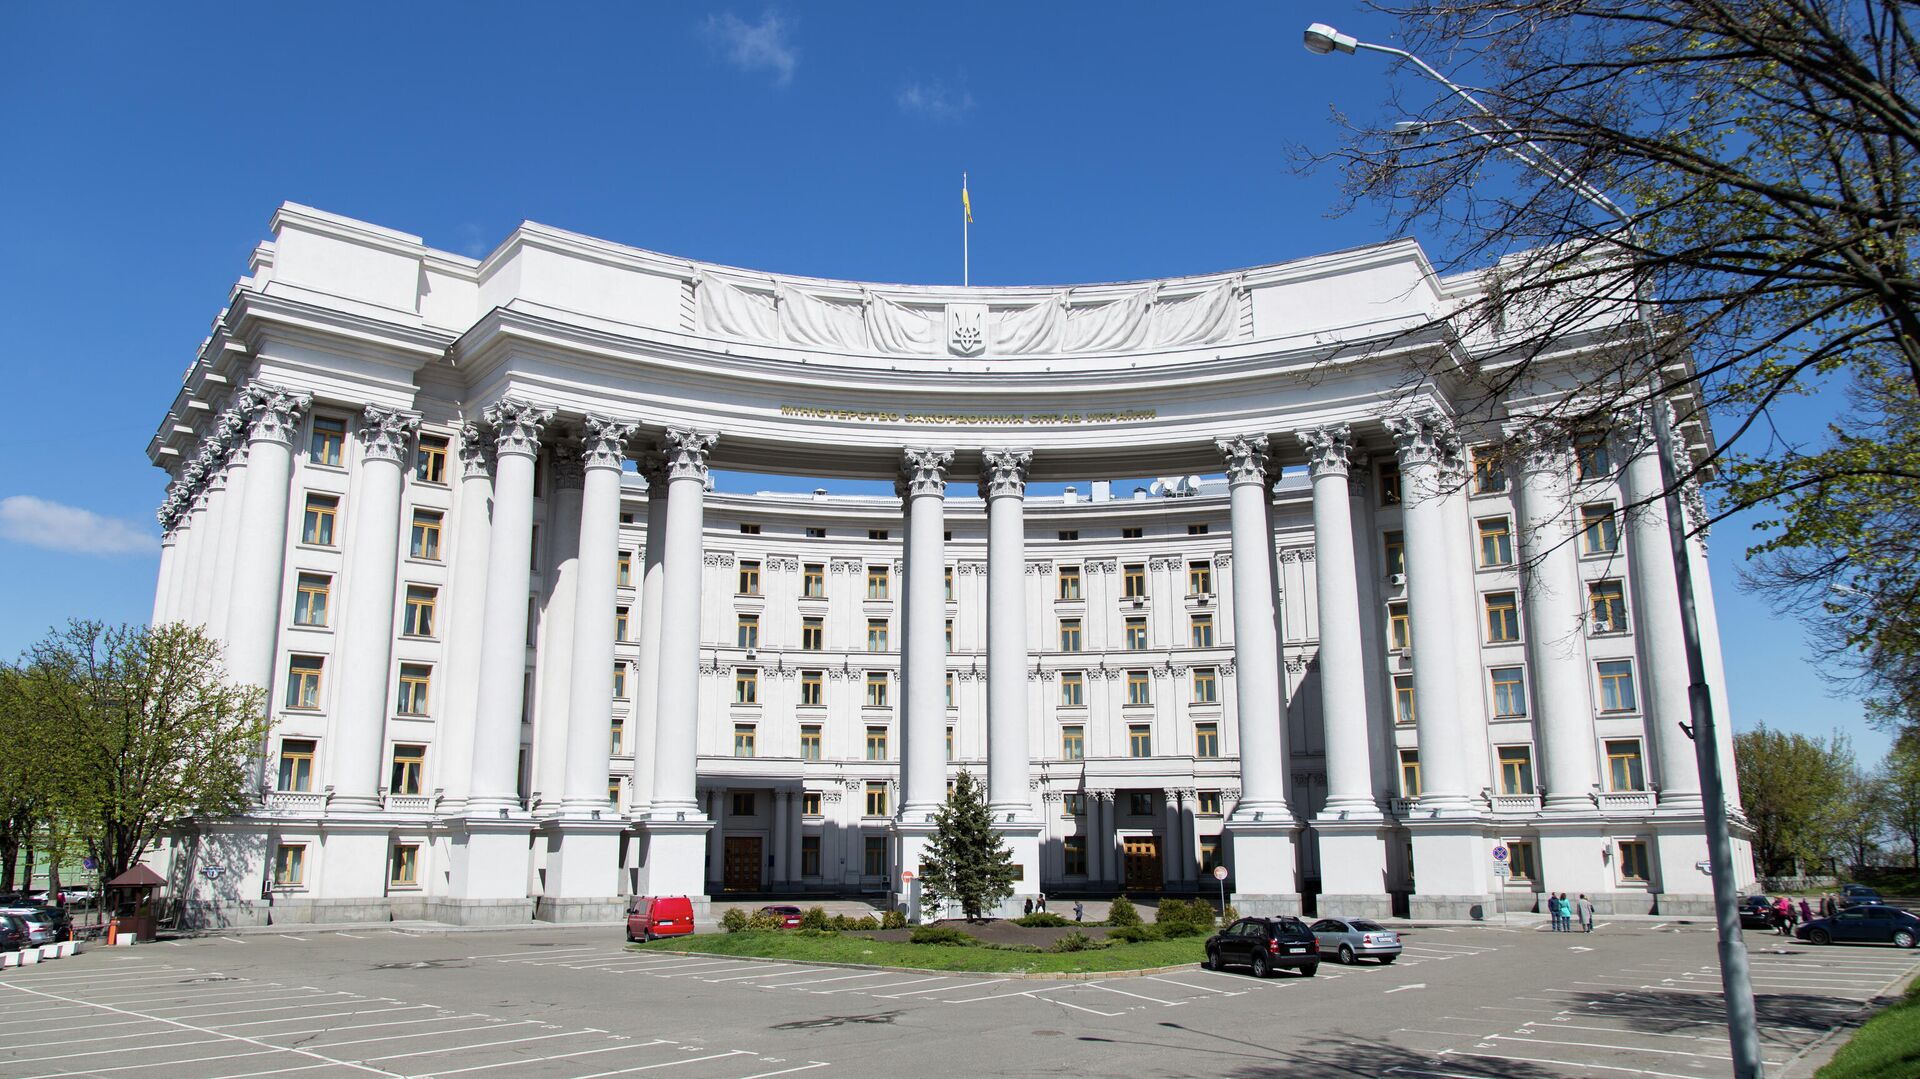 Здание Министерства иностранных дел Украины в Киеве. - Sputnik Азербайджан, 1920, 01.10.2021